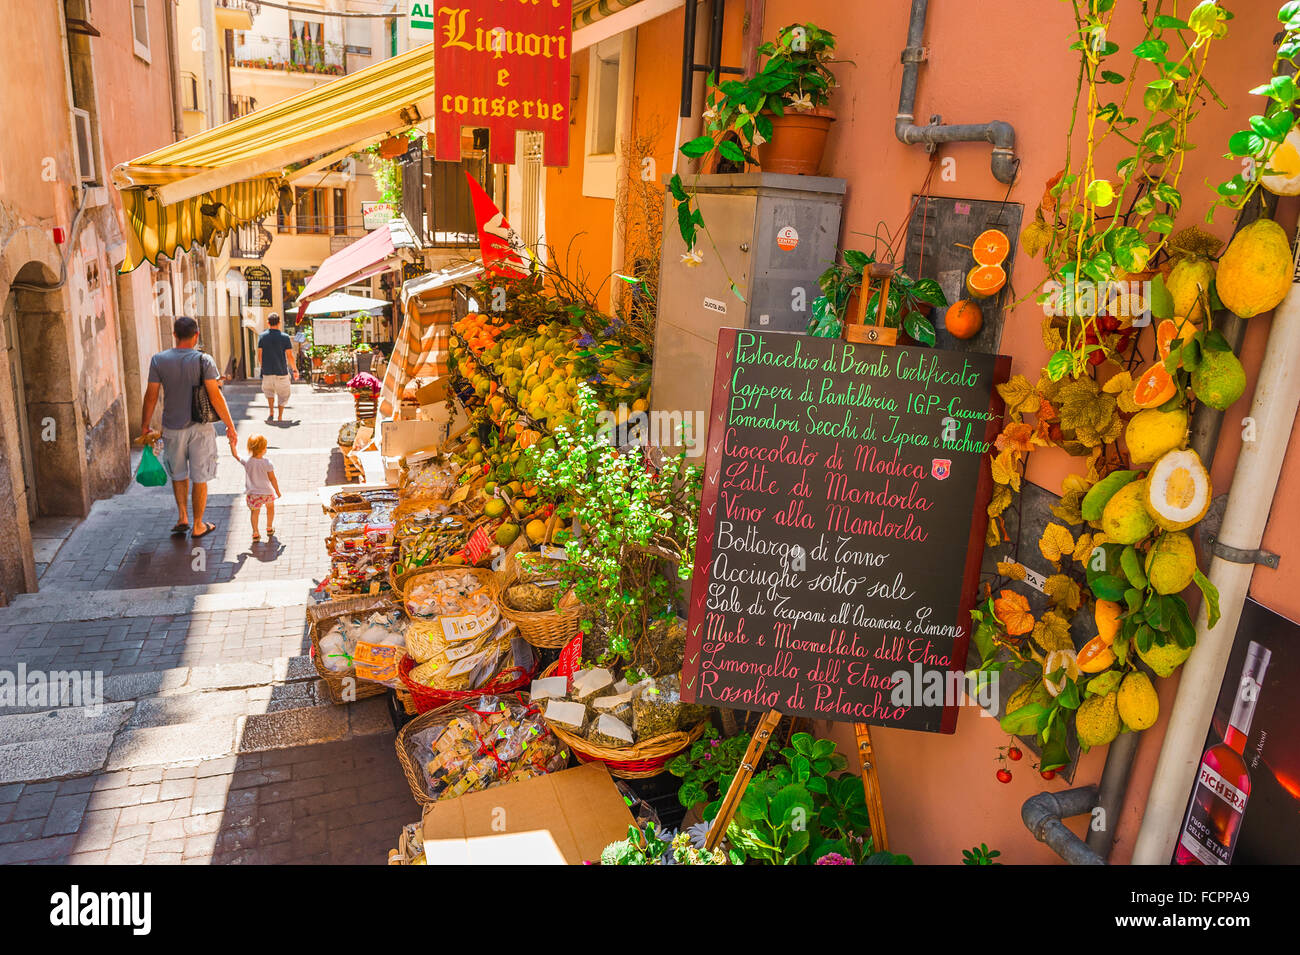 Shopping in famiglia in Italia, padre e bambino in un viaggio di shopping passa un colorato negozio di alimentari in una strada stretta a Taormina, Sicilia, Italia. Foto Stock